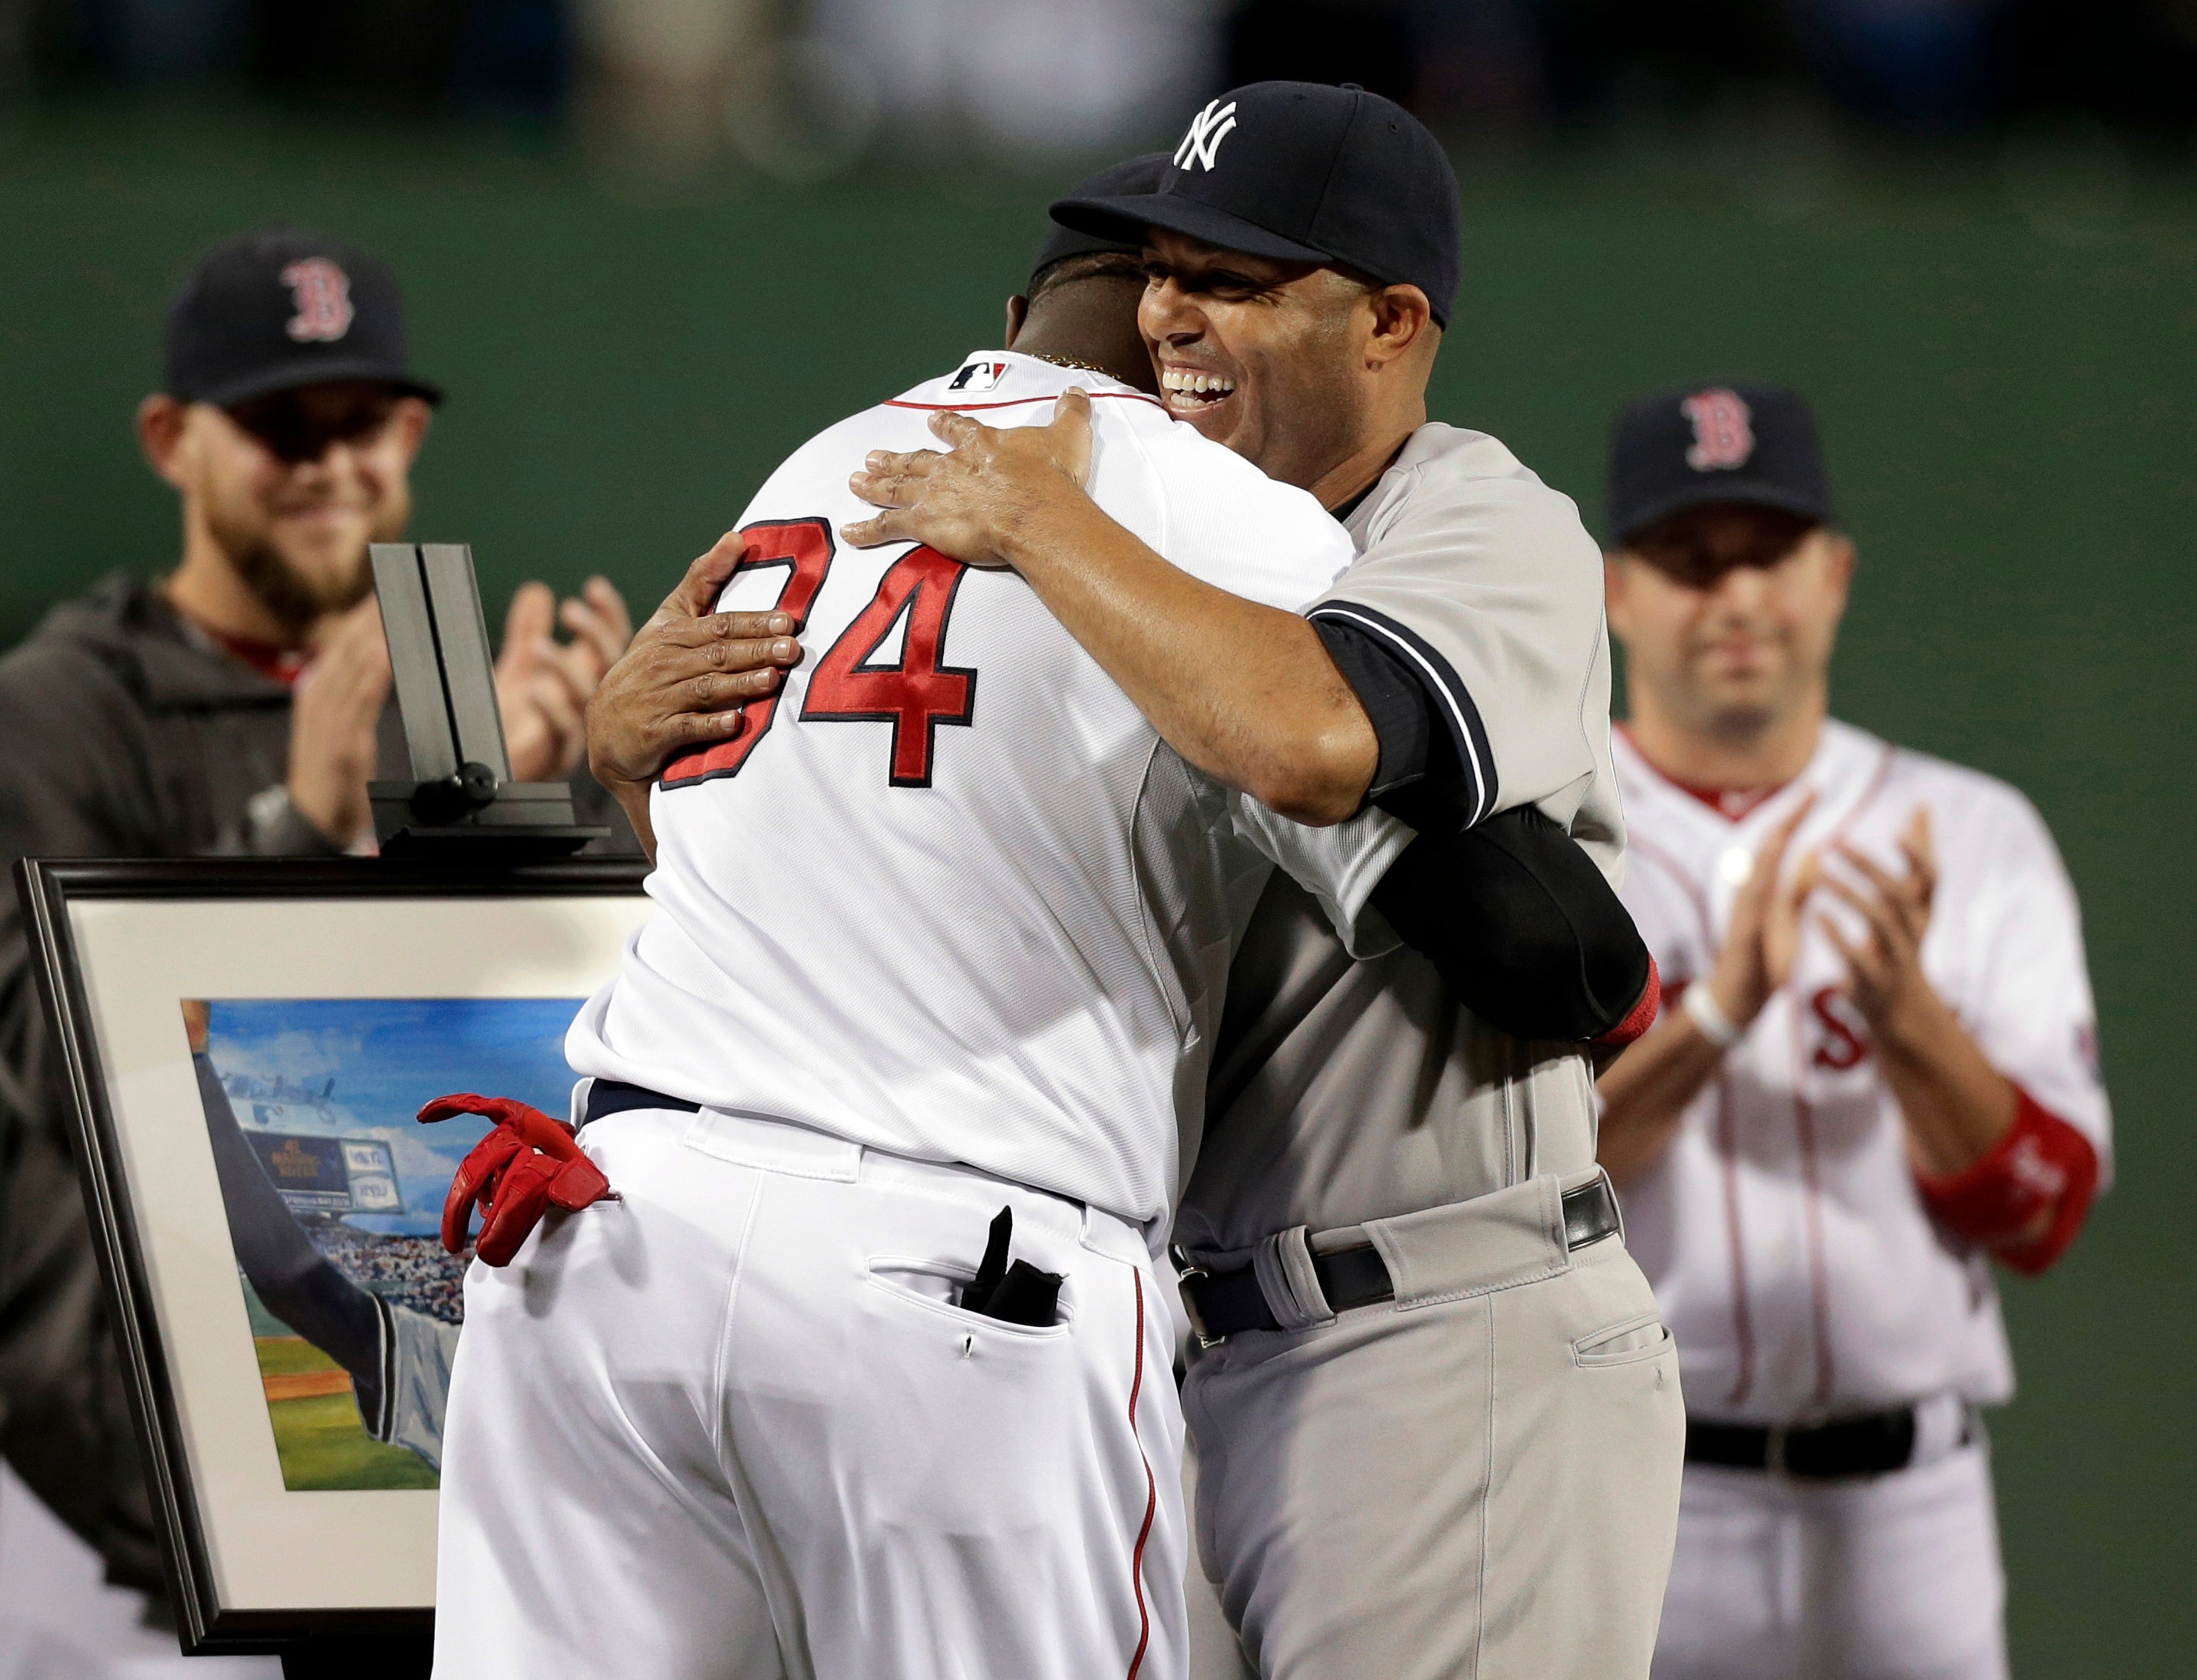 Boston Red Sox Honor New York Yankees Closer Mariano Rivera At